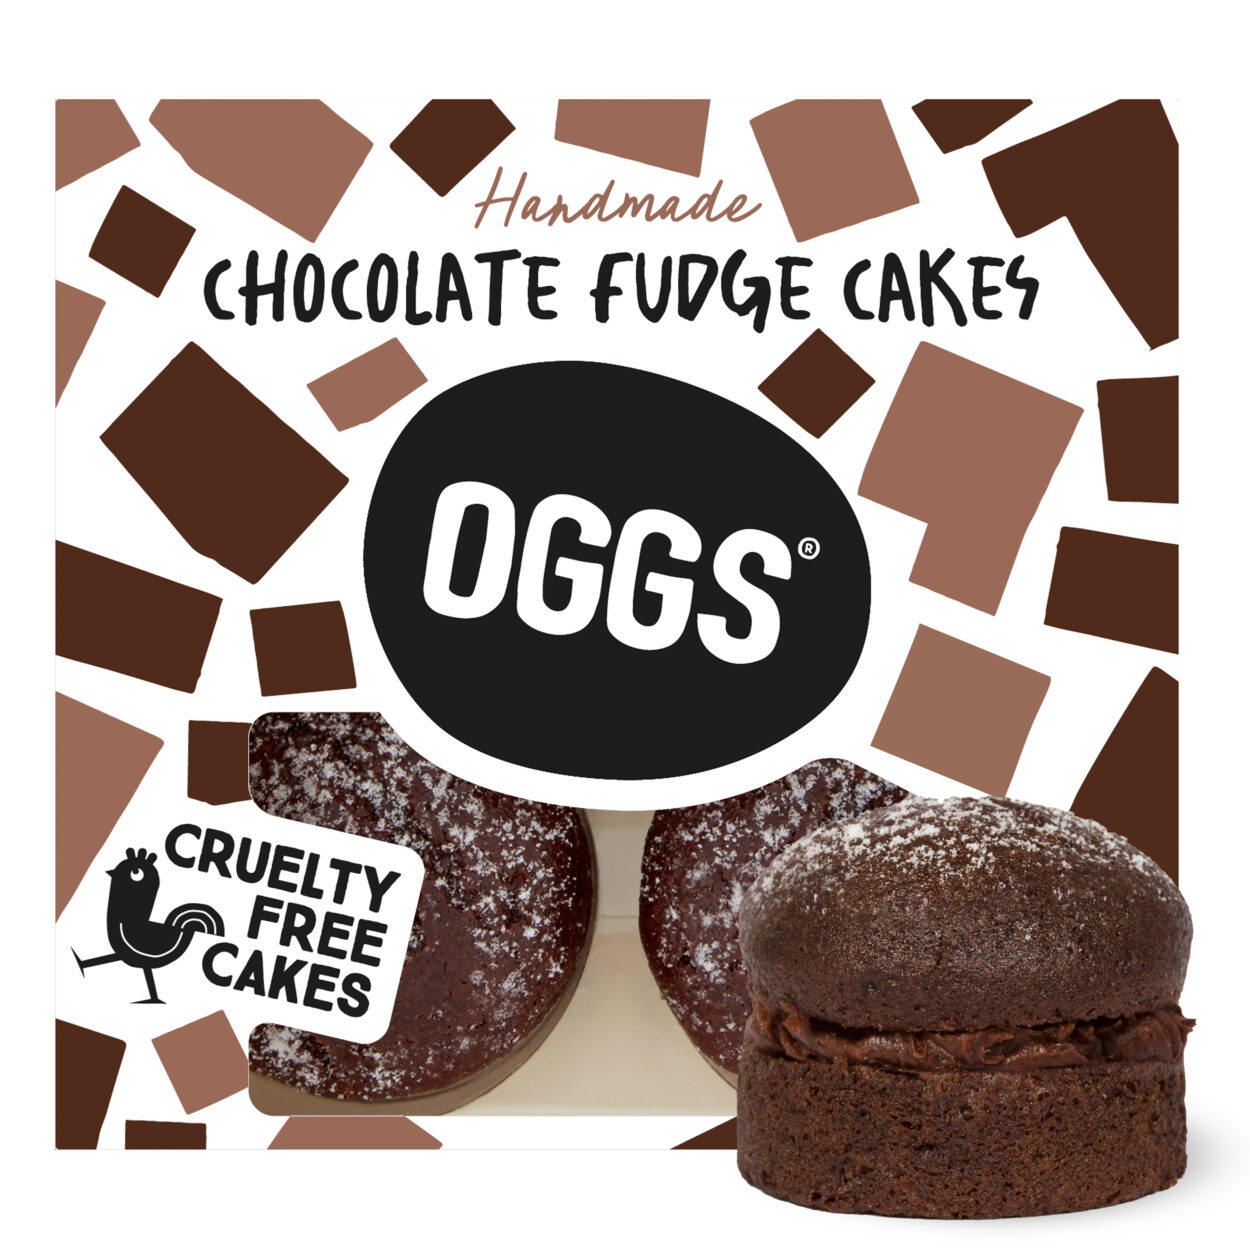 Chocolate Fudge Cakes